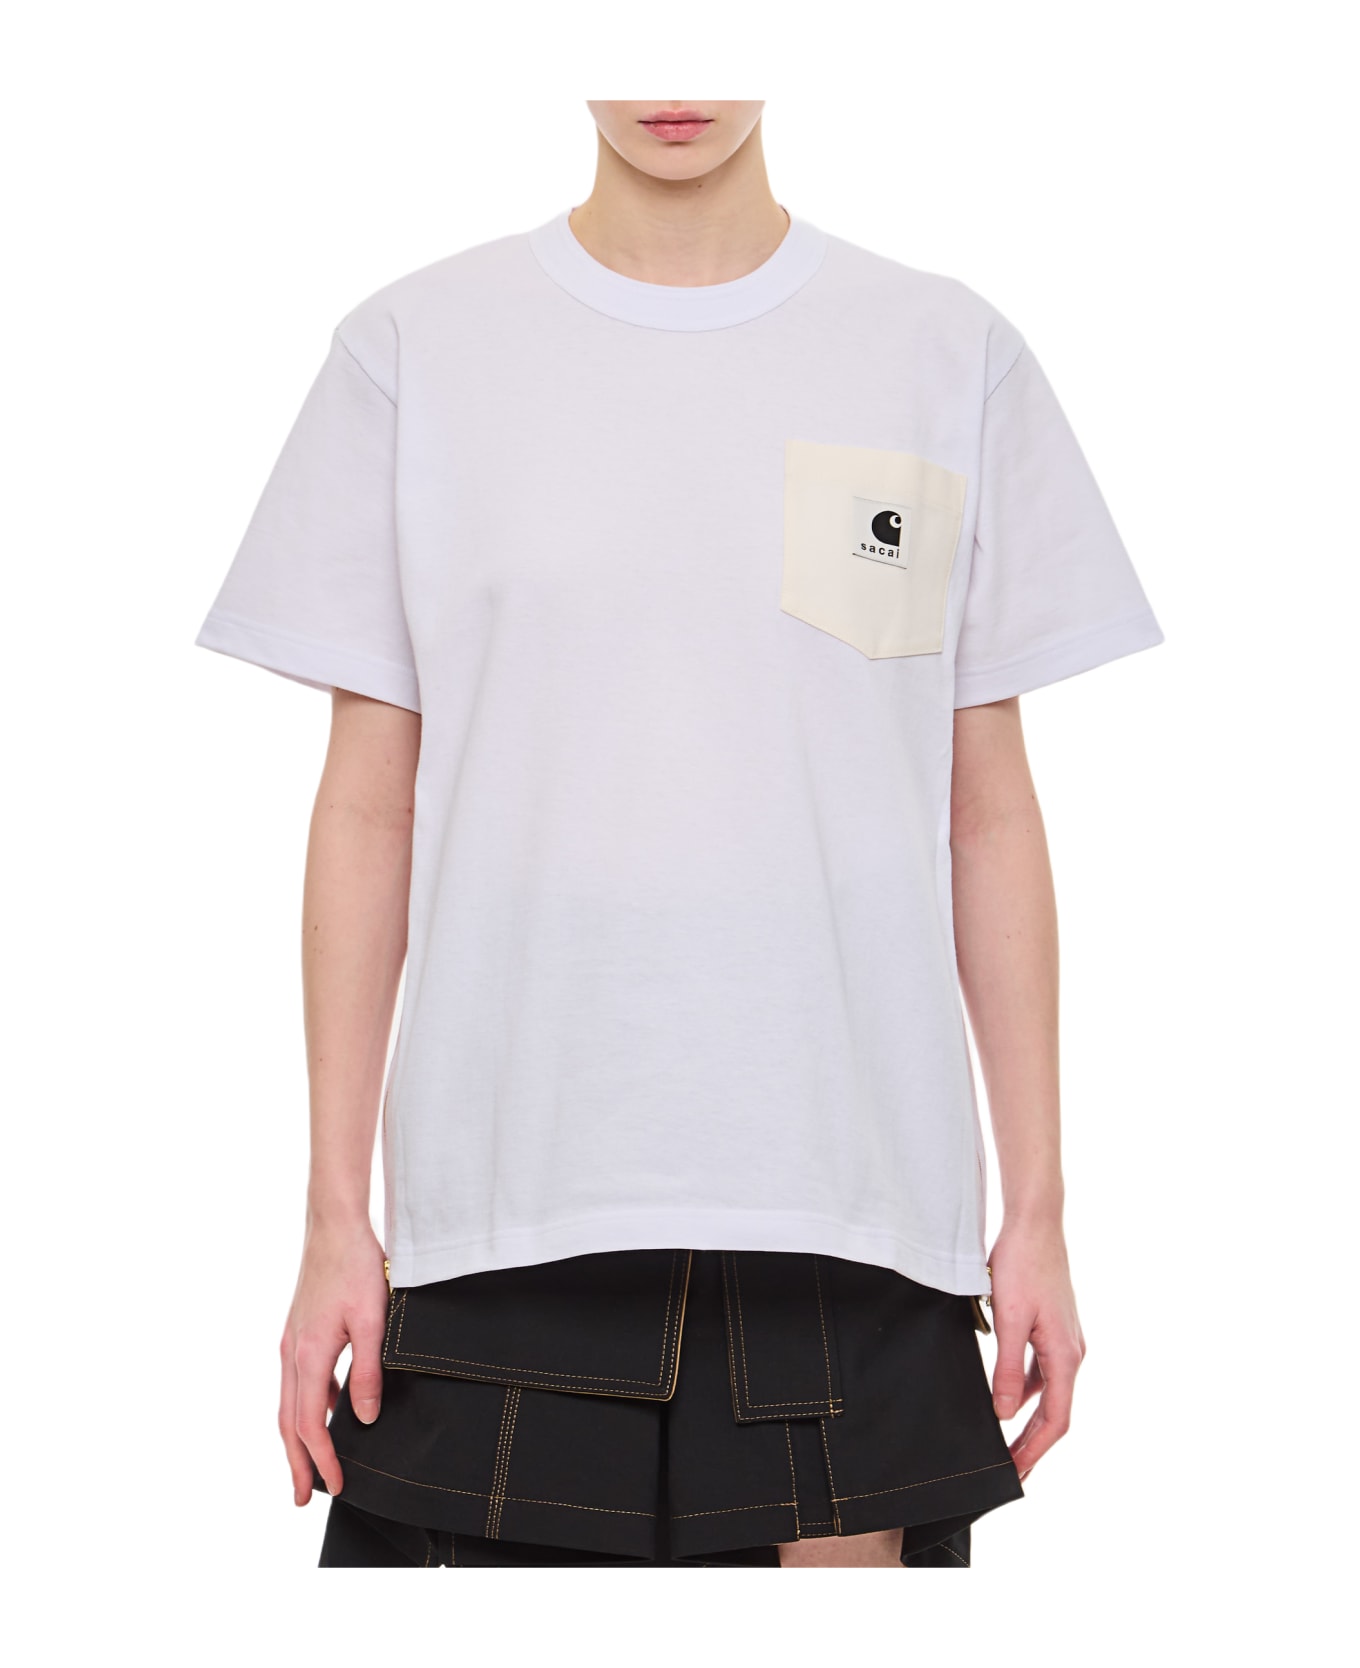 Sacai X Carhartt Wip Cotton T-shirt - White